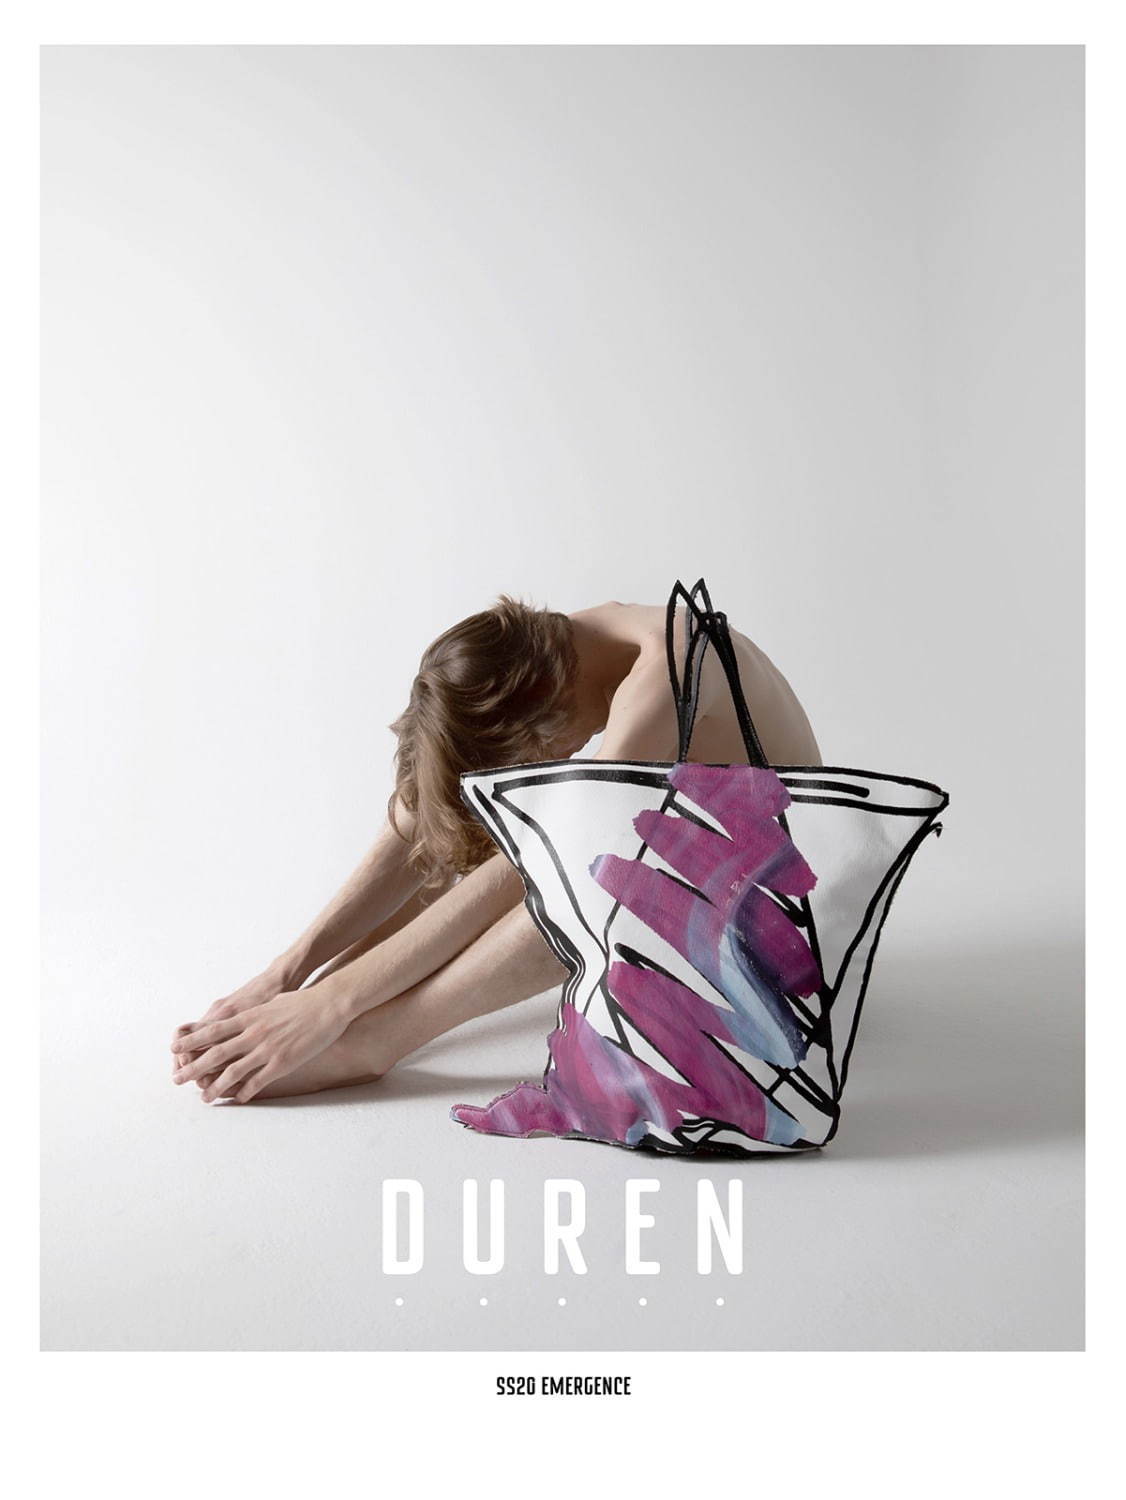 デューレン(DUREN) 2020年春夏メンズコレクション  - 写真1